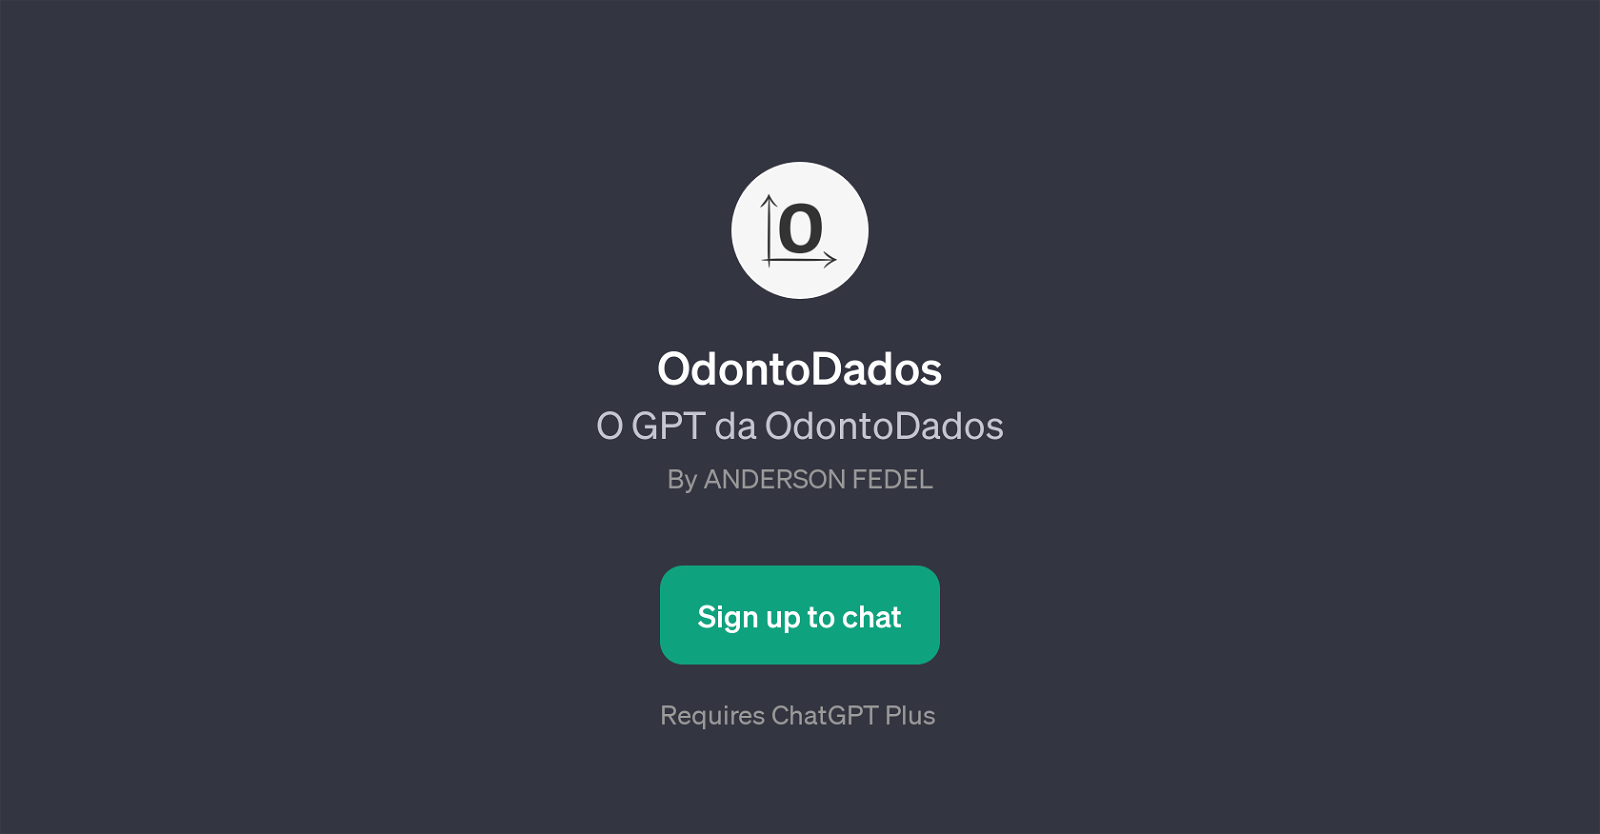 OdontoDados website